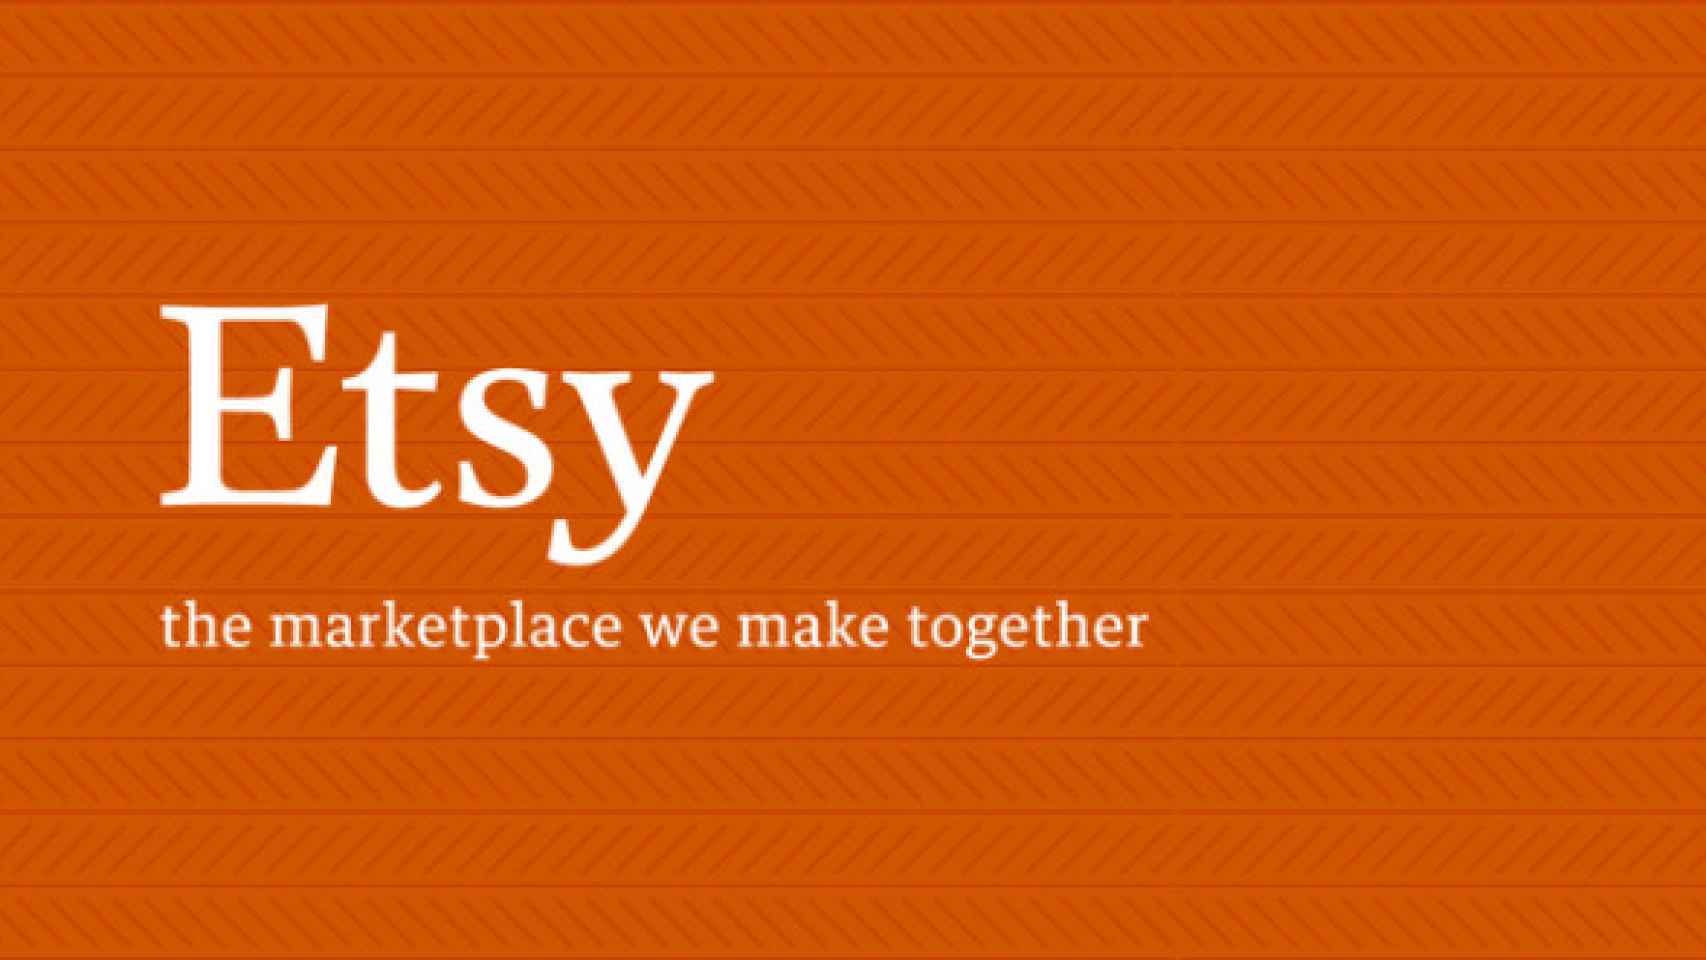 La app oficial de Etsy para Android ya disponible: Comprar productos artesanales desde cualquier sitio